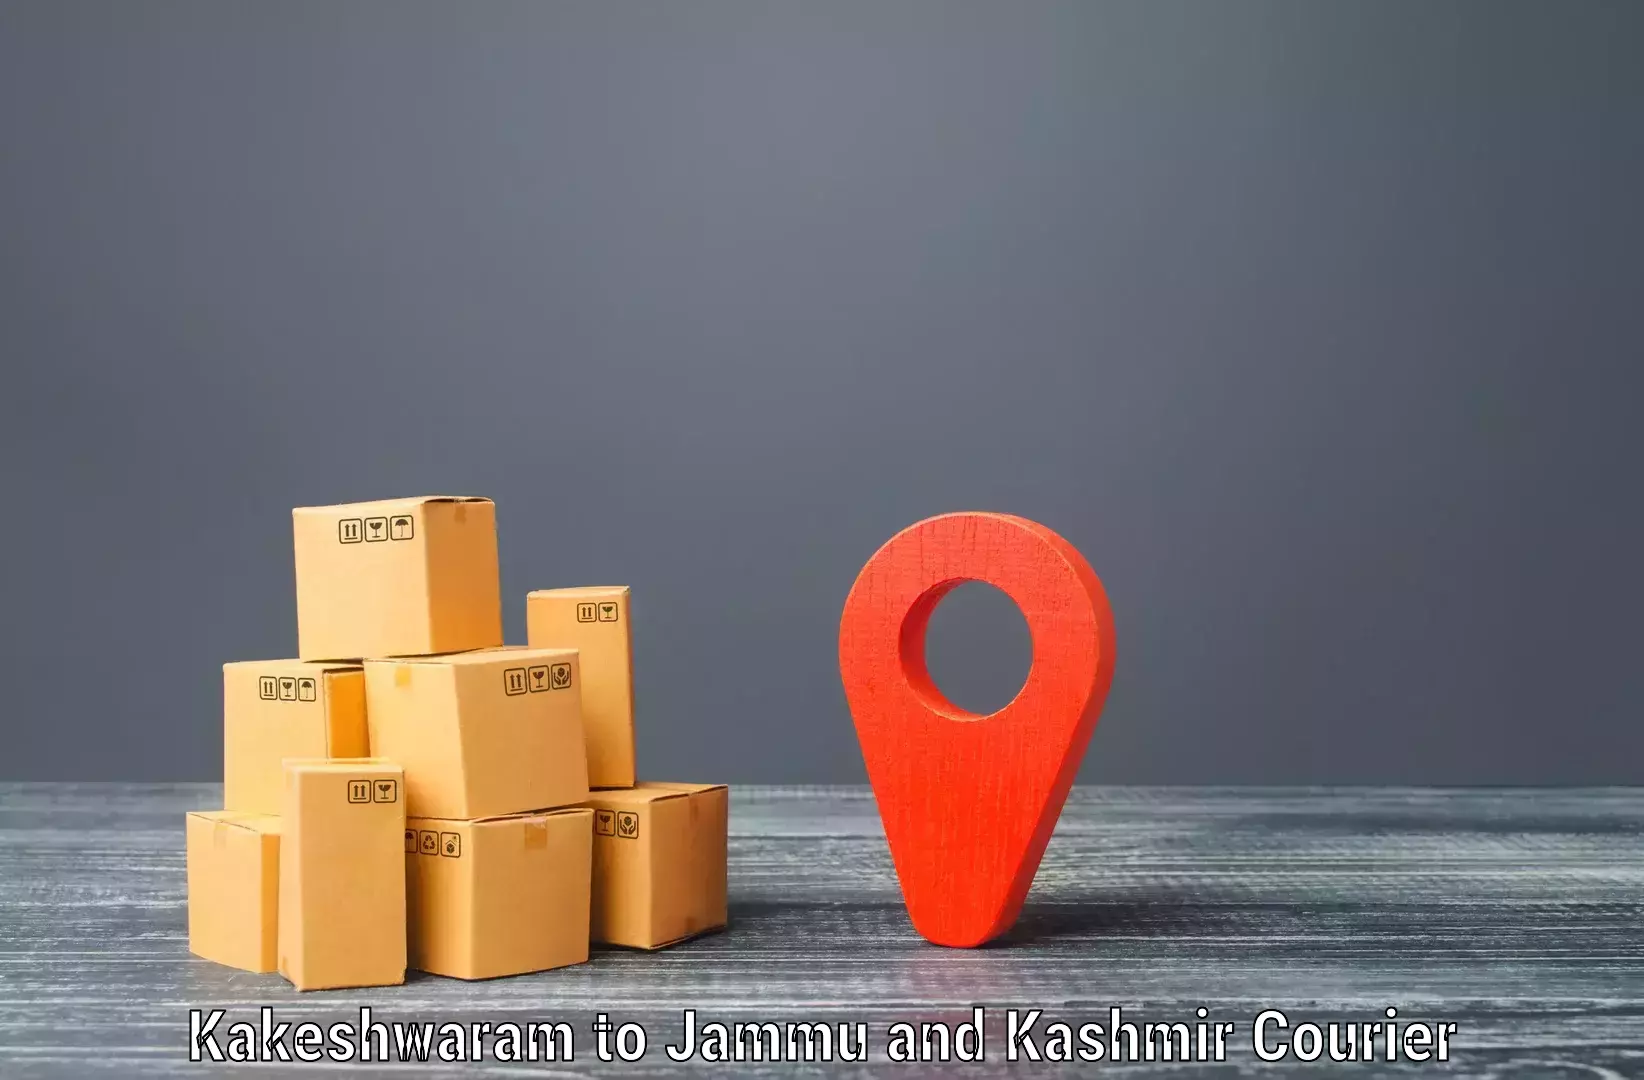 Efficient parcel delivery Kakeshwaram to Jammu and Kashmir